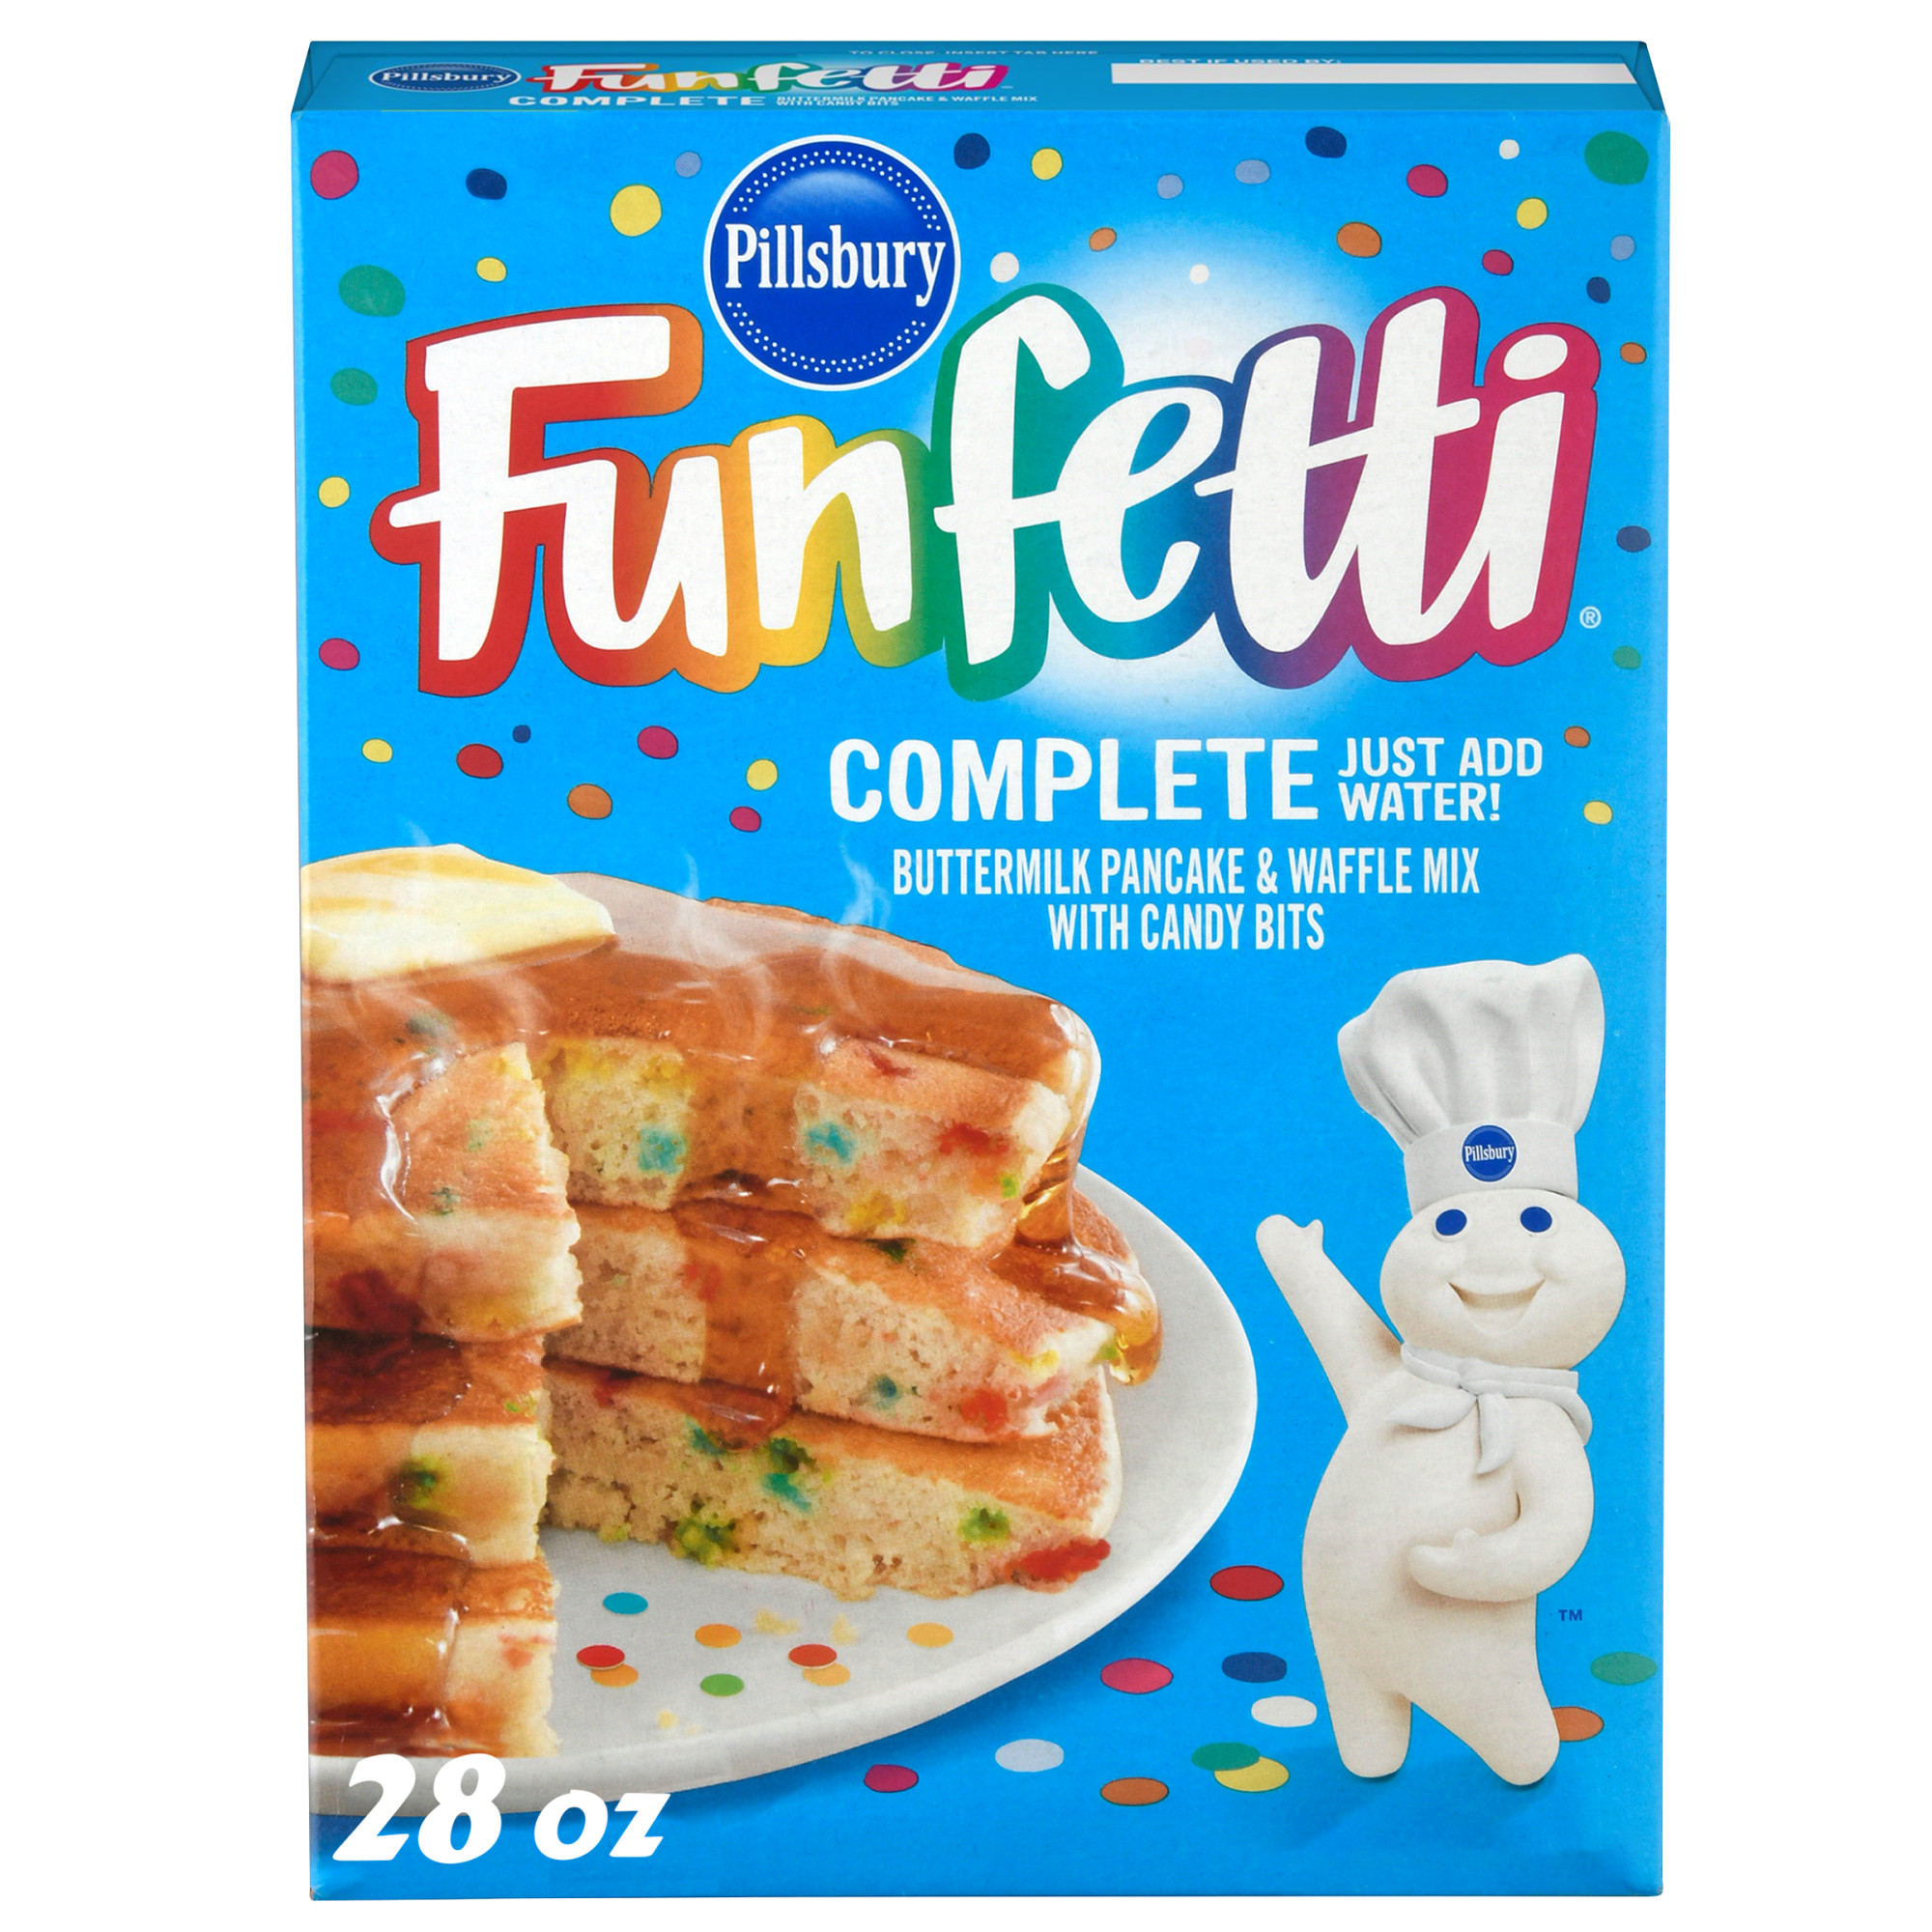 Pillsbury Funfetti Complete Buttermilk Pancake and Waffle Mix, 28 oz Box - image 1 of 8